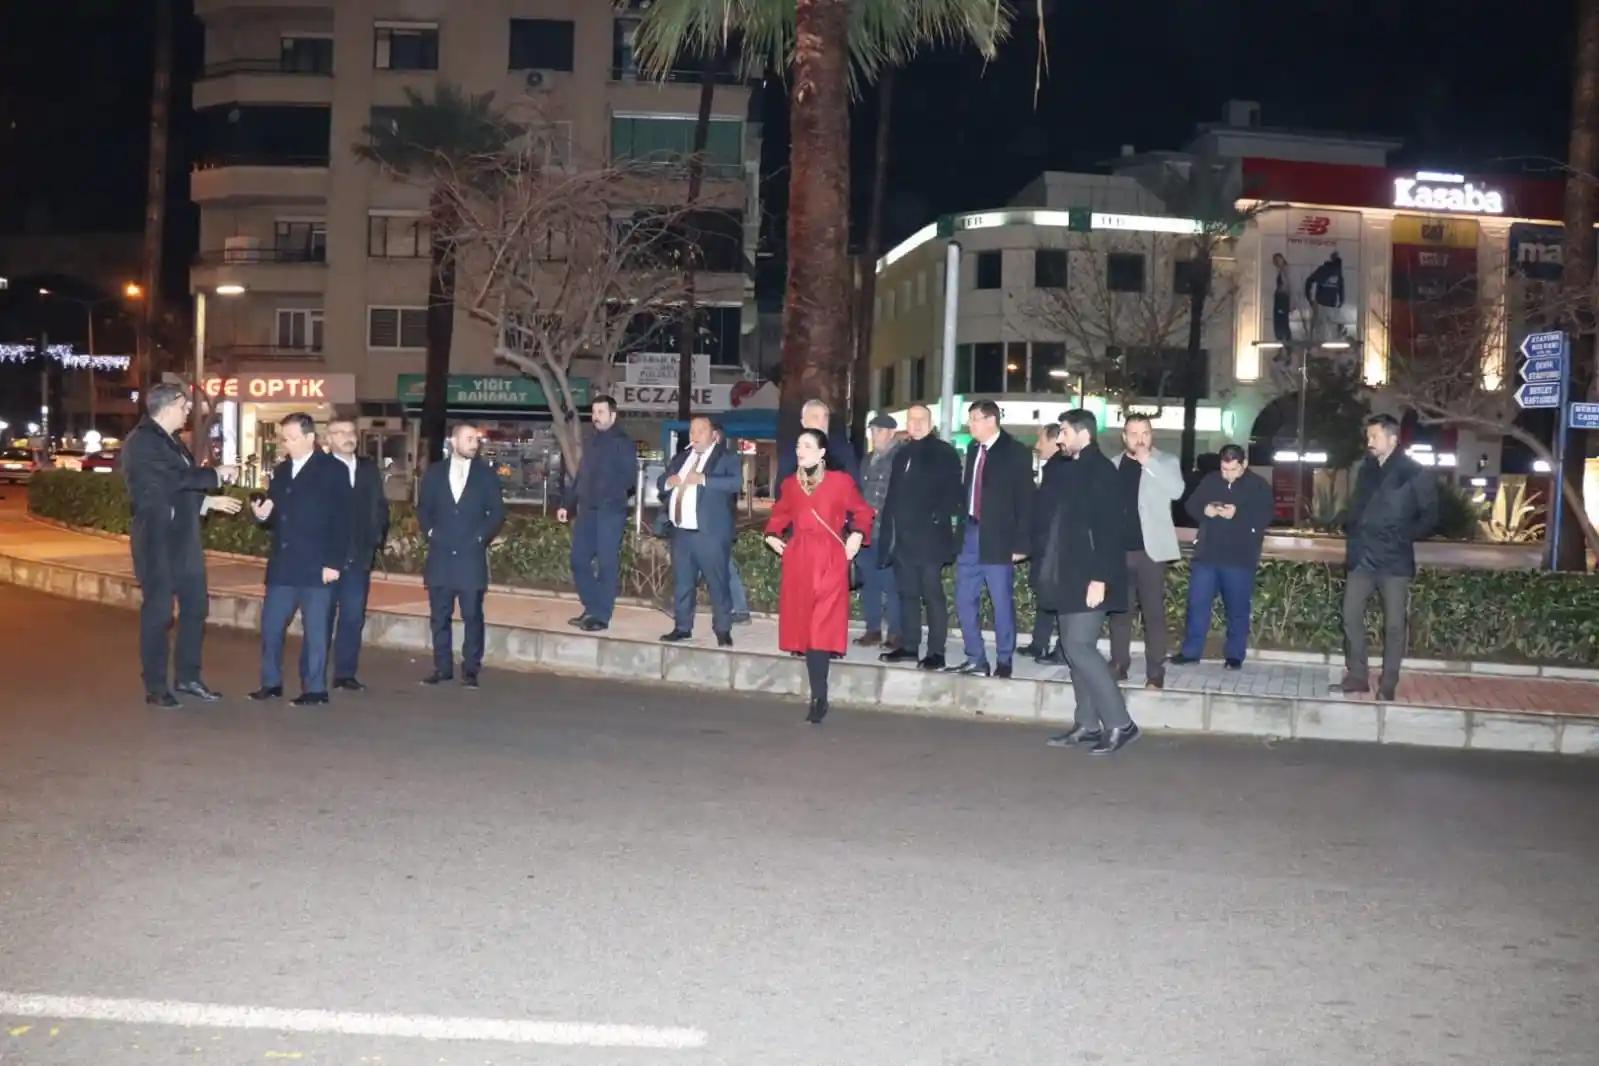 Nazilli Belediye Başkanı Özcan'dan açıklama: Cumhurbaşkanı Erdoğan 4 Şubat günü Nazilli'ye geliyor
